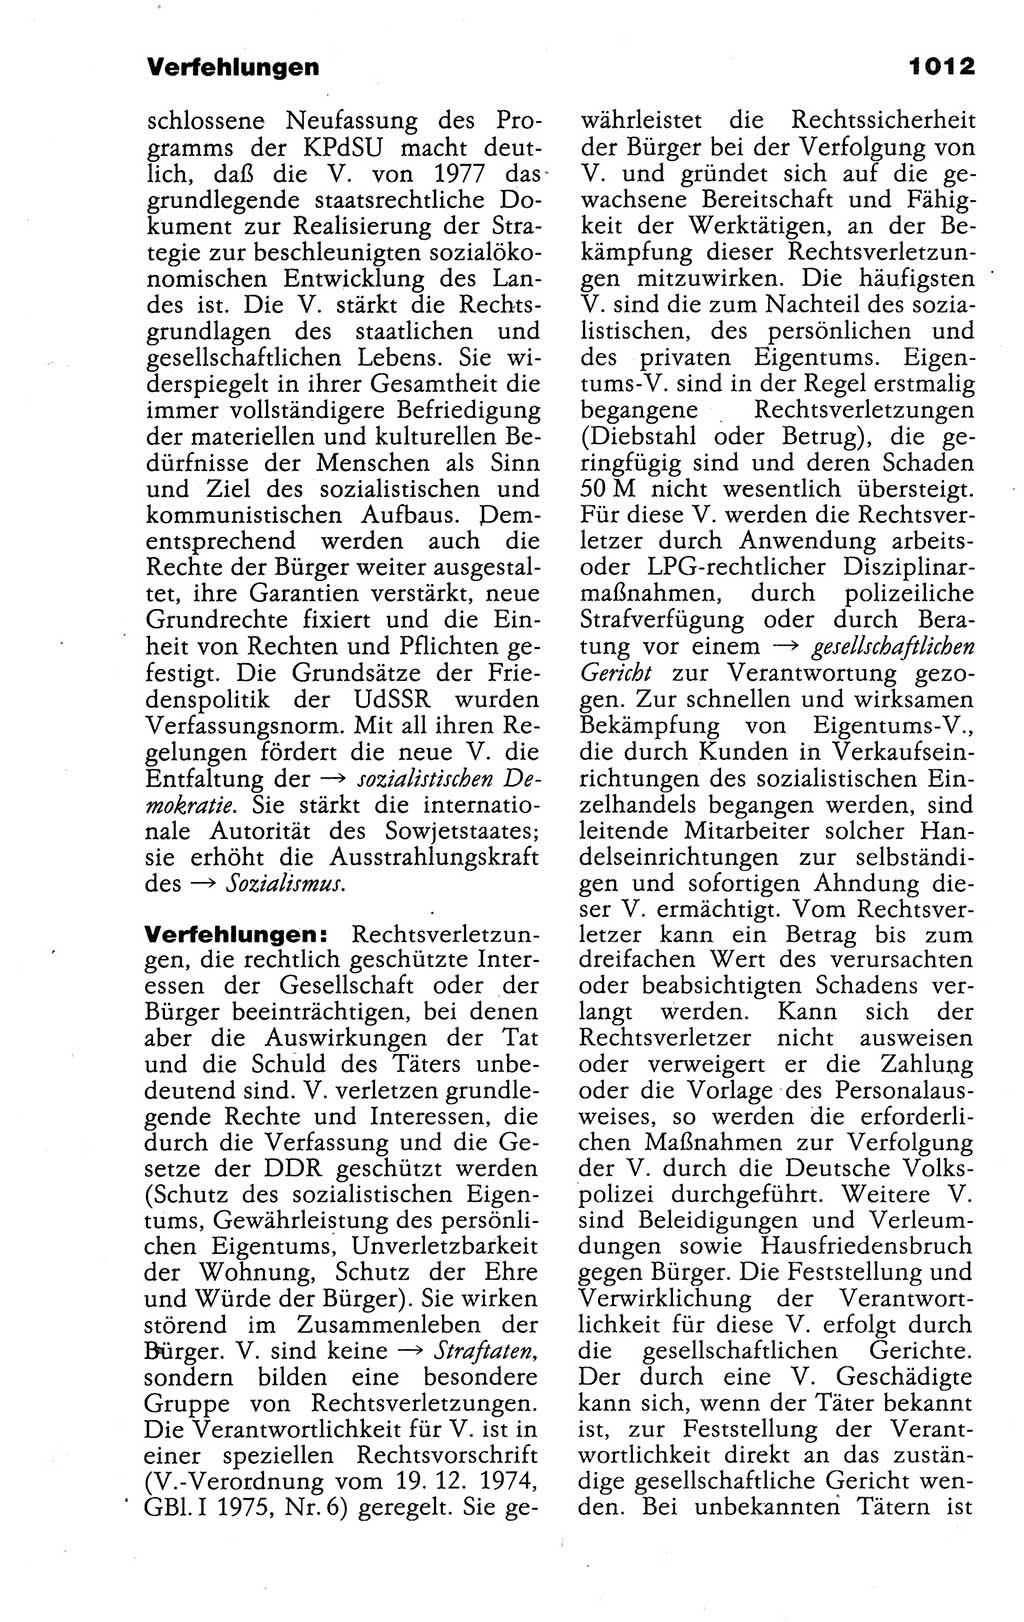 Kleines politisches Wörterbuch [Deutsche Demokratische Republik (DDR)] 1988, Seite 1012 (Kl. pol. Wb. DDR 1988, S. 1012)